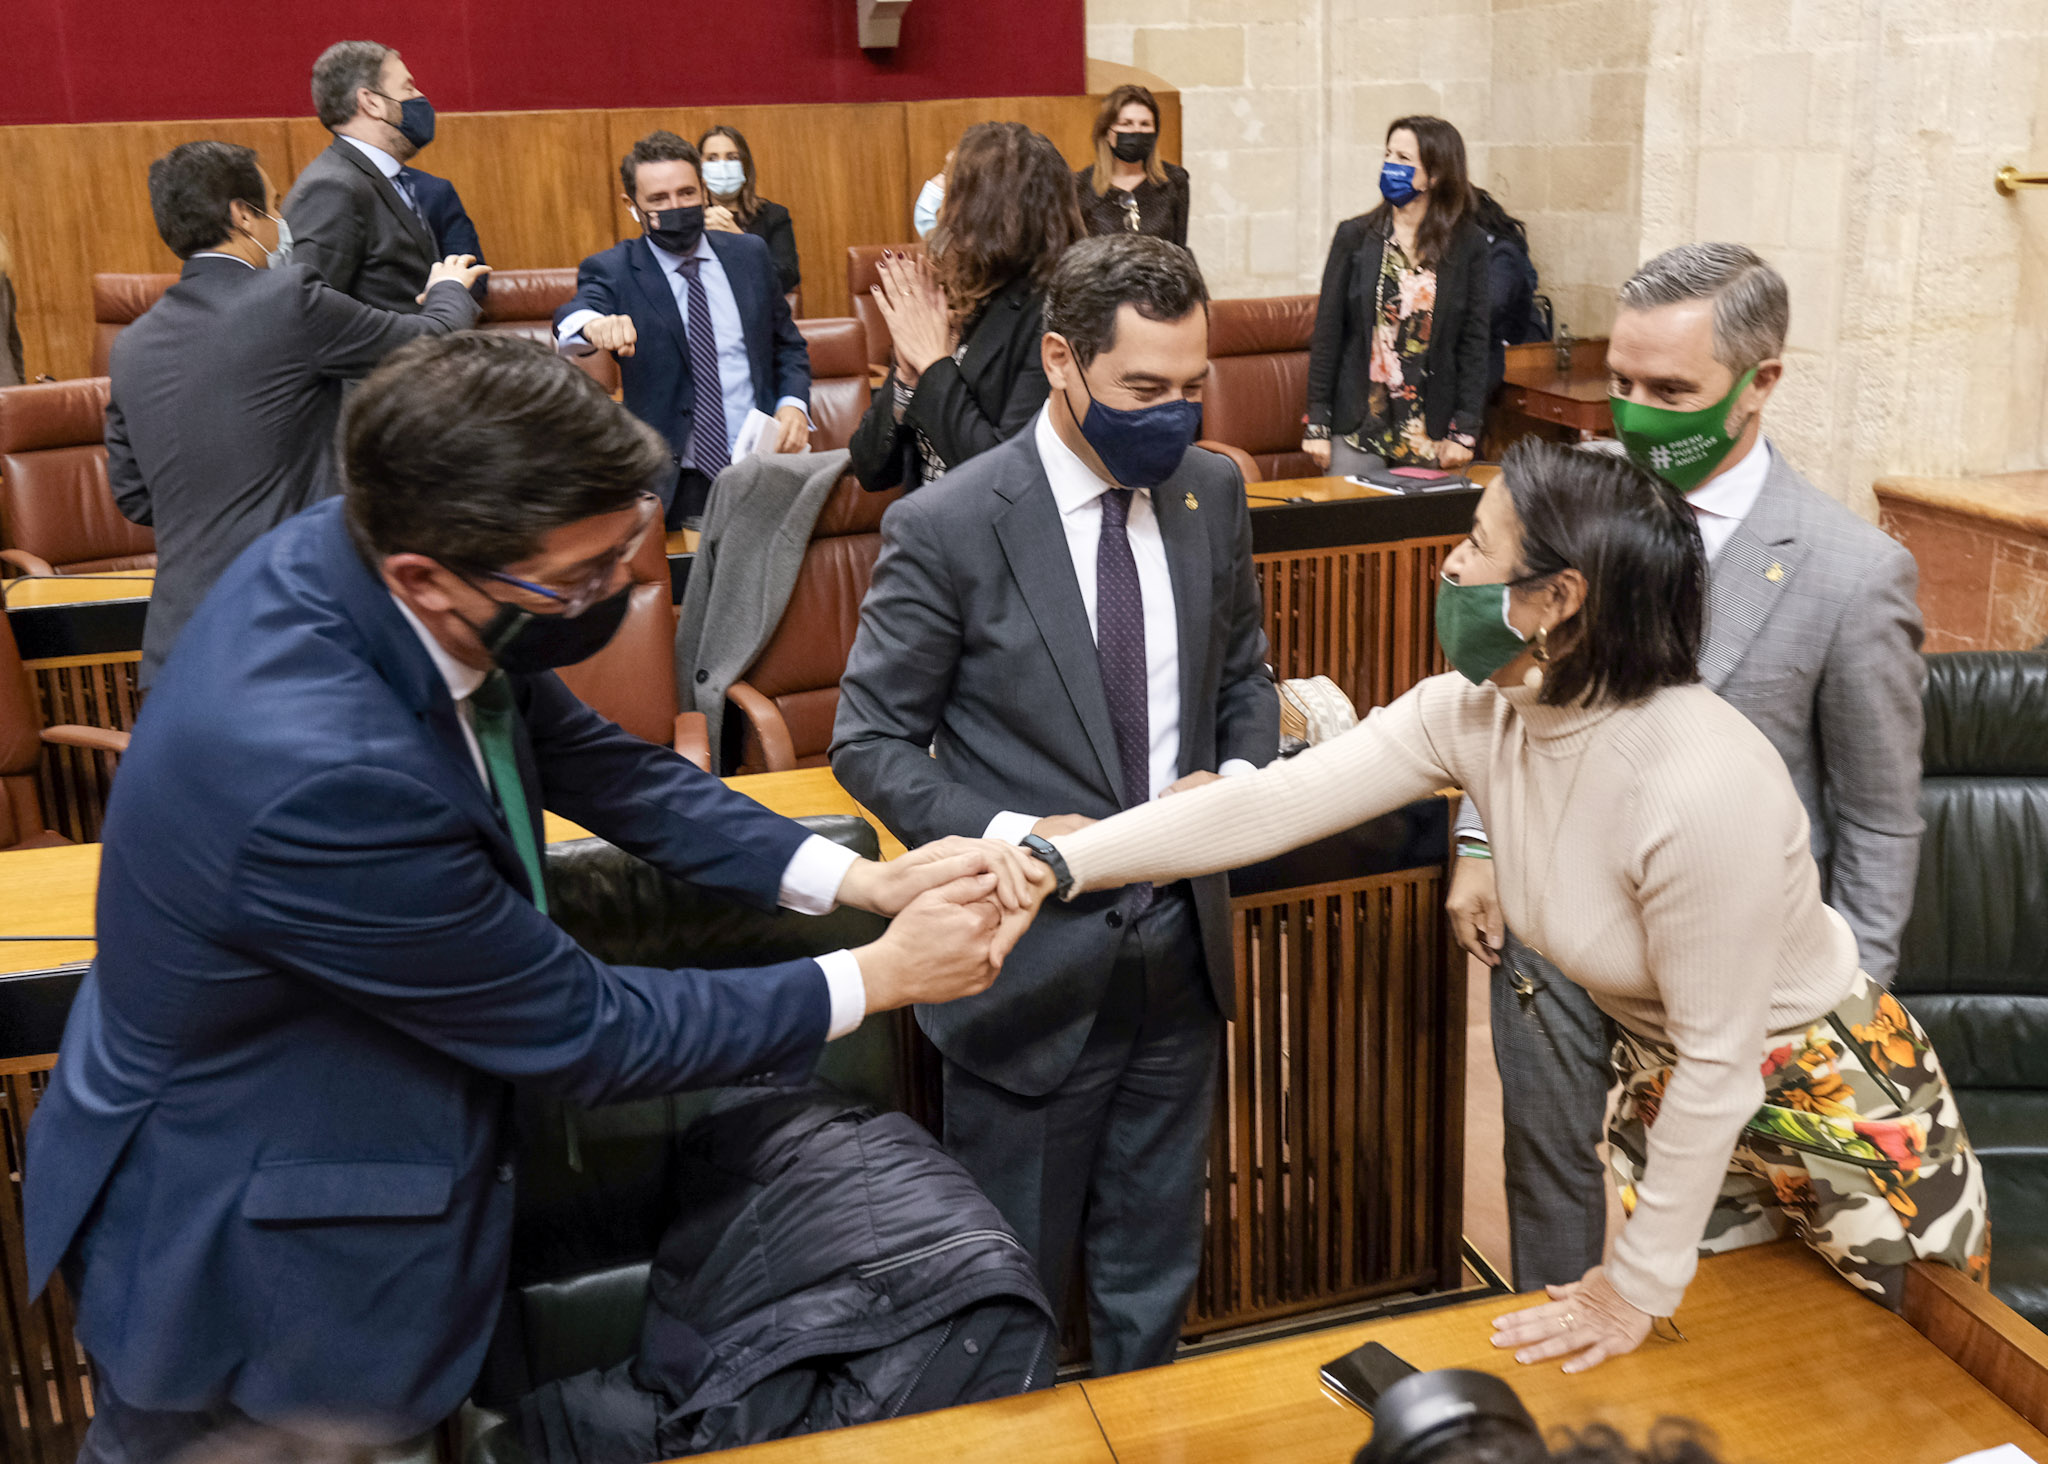   La presidenta del Parlamento de Andaluca, Marta Bosquet; el presidente de la Junta, Juan Manuel Moreno; el vicepresidente, Juan Marn; y el consejero de Hacienda, Juan Bravo 